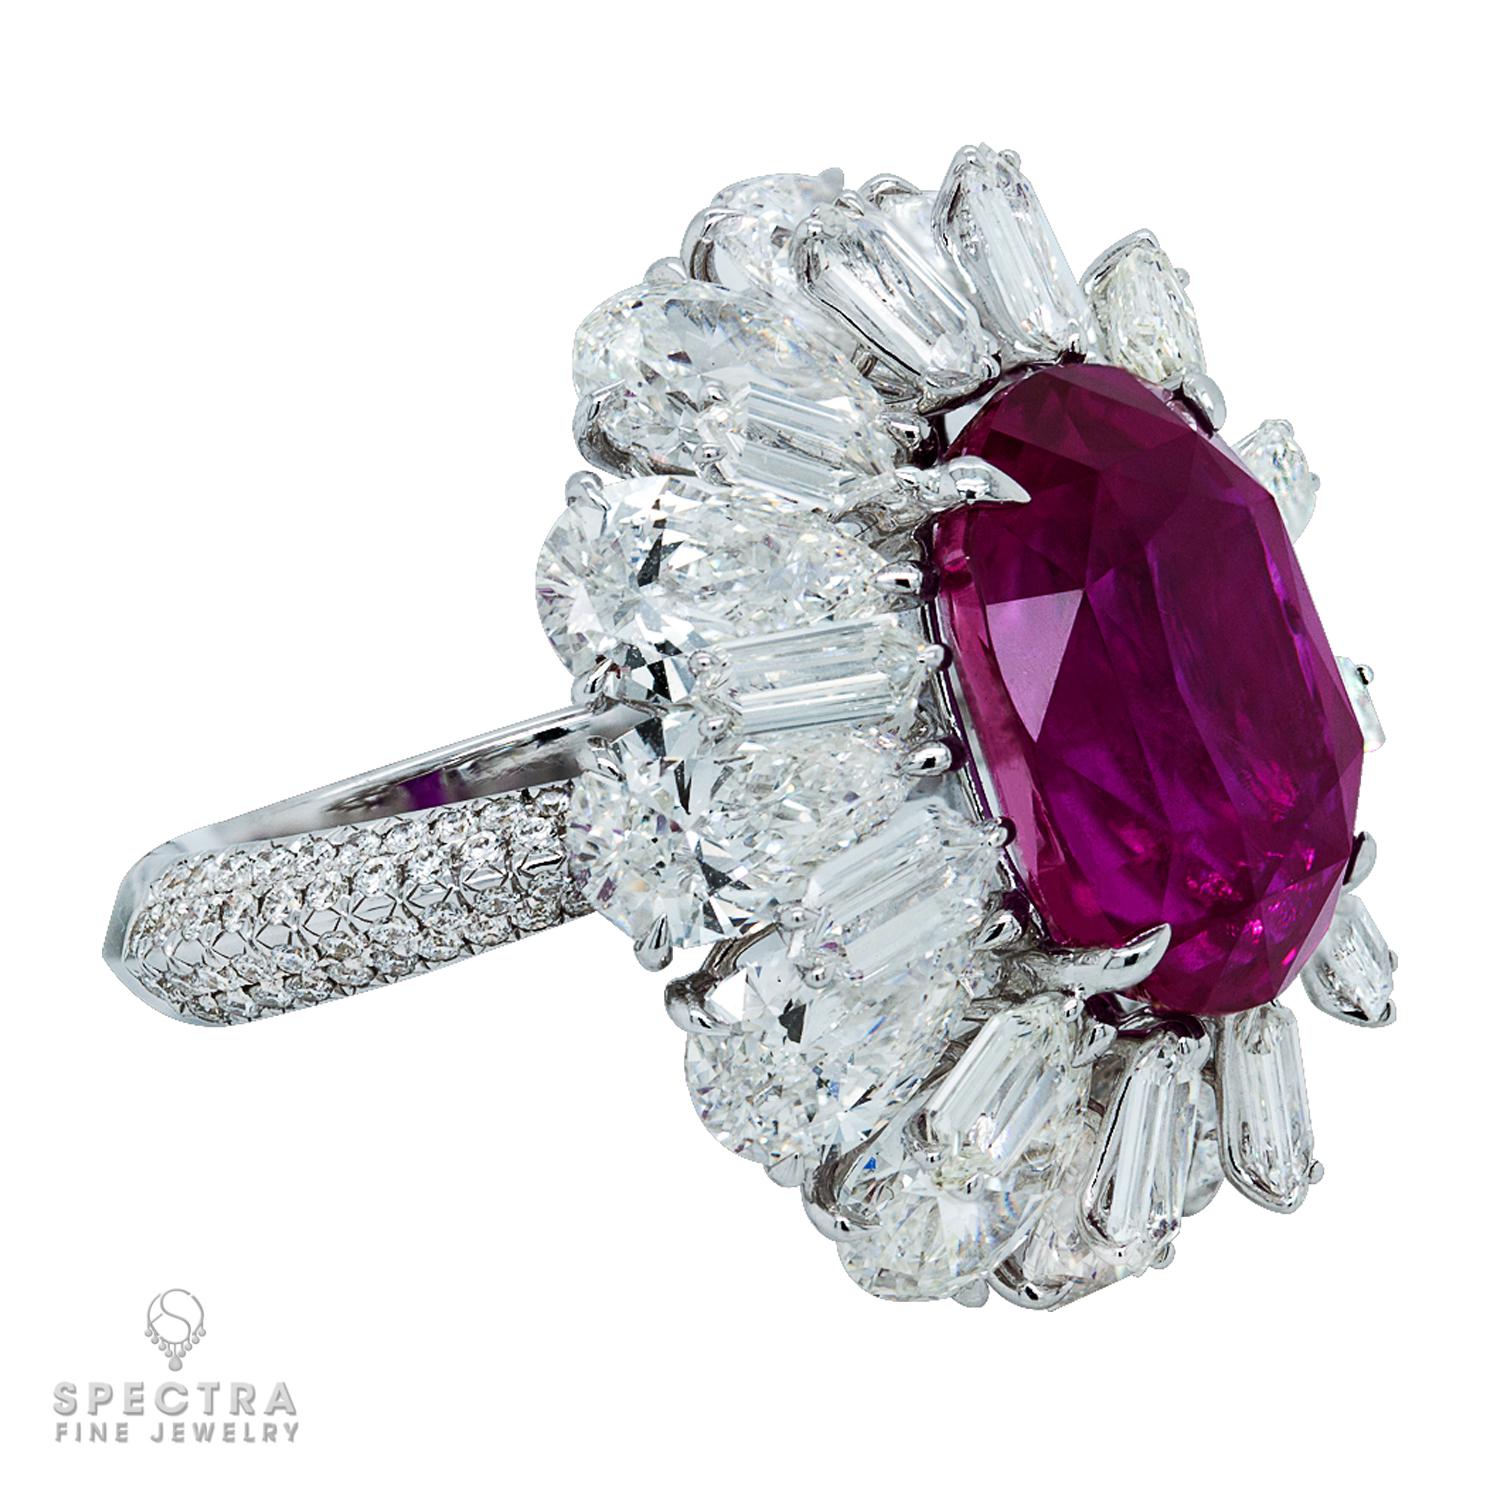 Begeben Sie sich auf eine Reise der Opulenz mit diesem atemberaubenden Cocktailring, einem Meisterwerk, das mühelos die Essenz von Luxus und Seltenheit einfängt. Sein Herzstück ist ein ovaler violett-rosa Saphir, ein außergewöhnlicher Edelstein mit